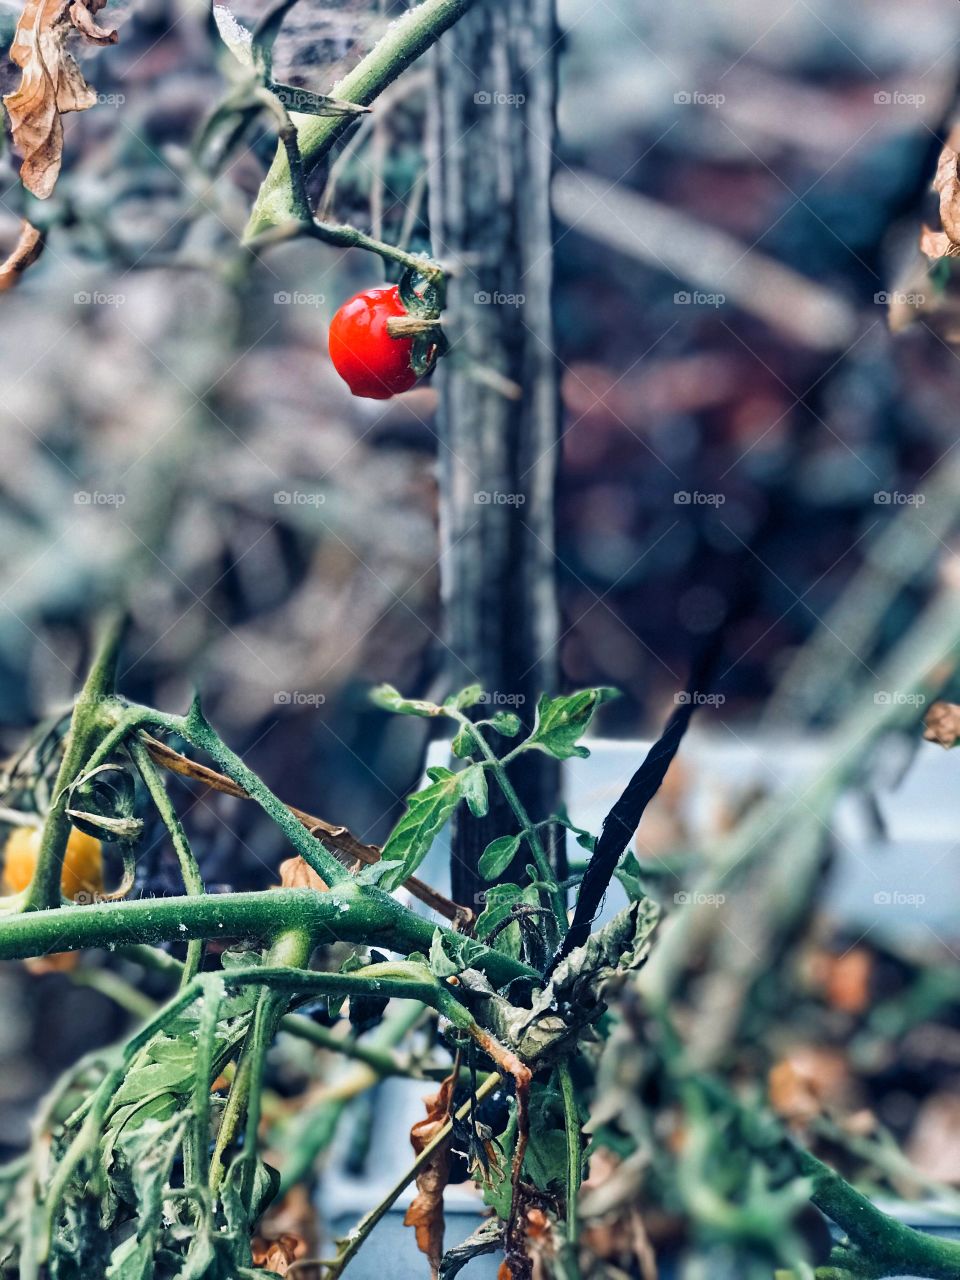 an tomato